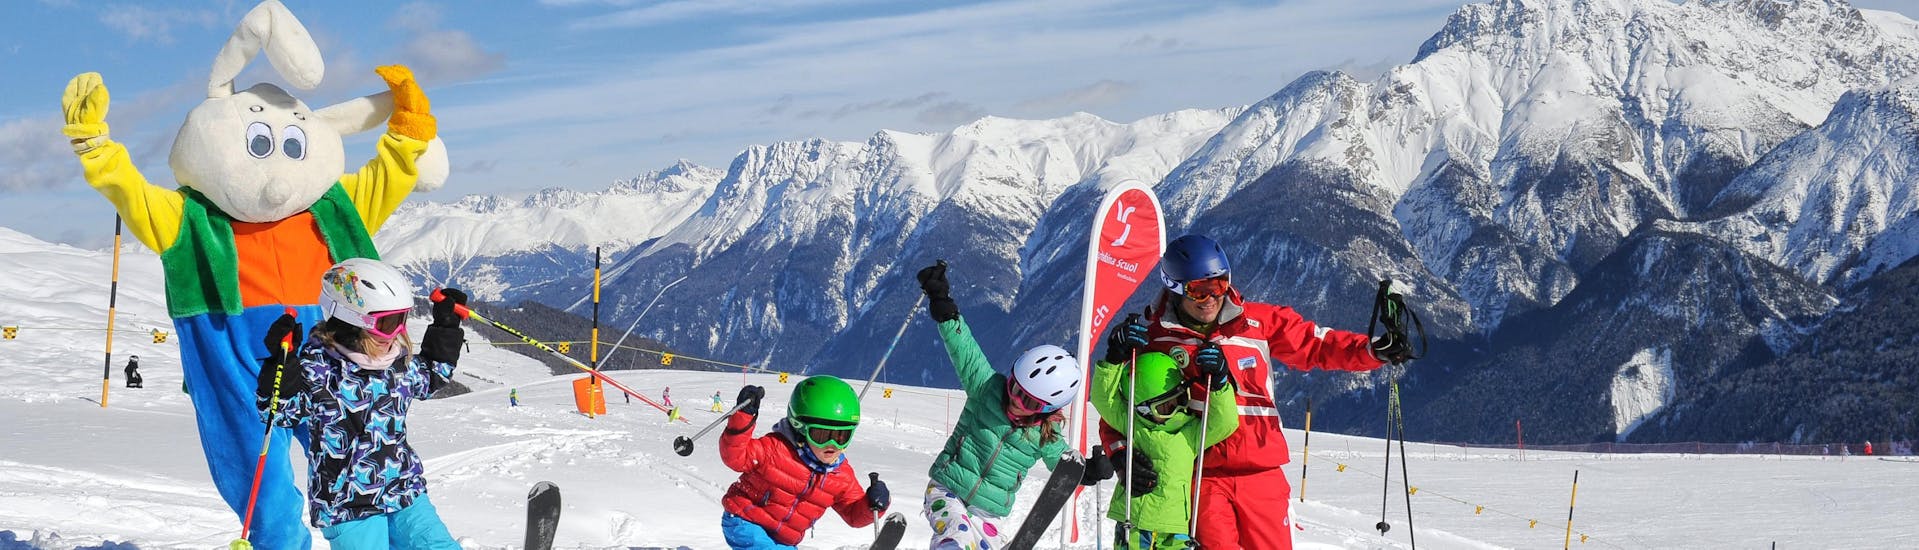 Lezioni di sci per bambini a partire da 3 anni con esperienza.